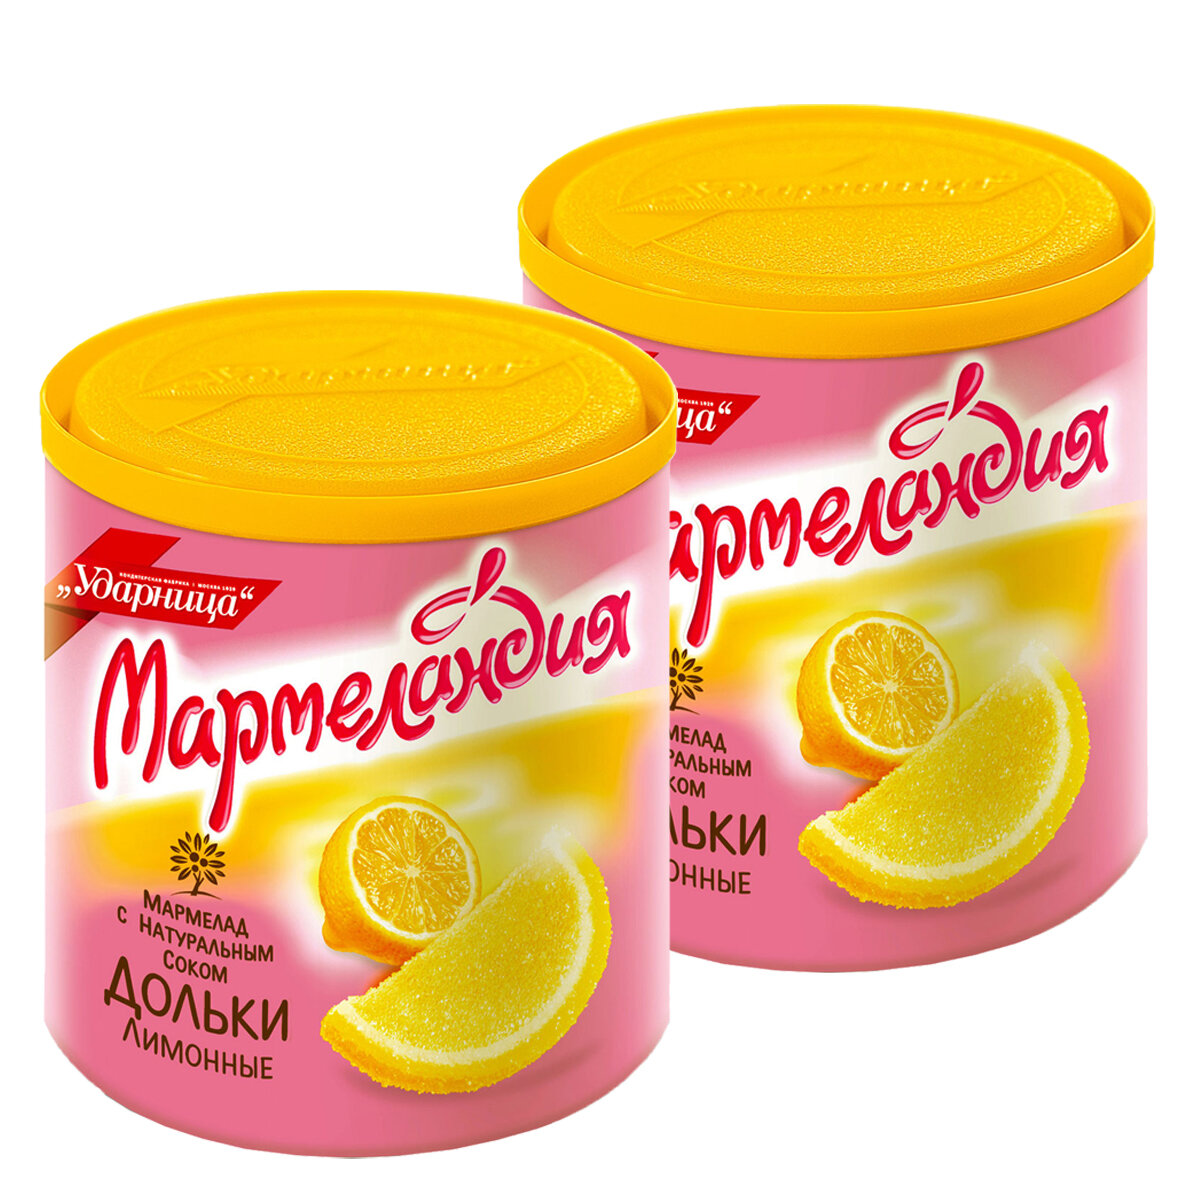 Мармелад "Мармеландия" Лимонные дольки, 2 упаковки по 250 грамм.